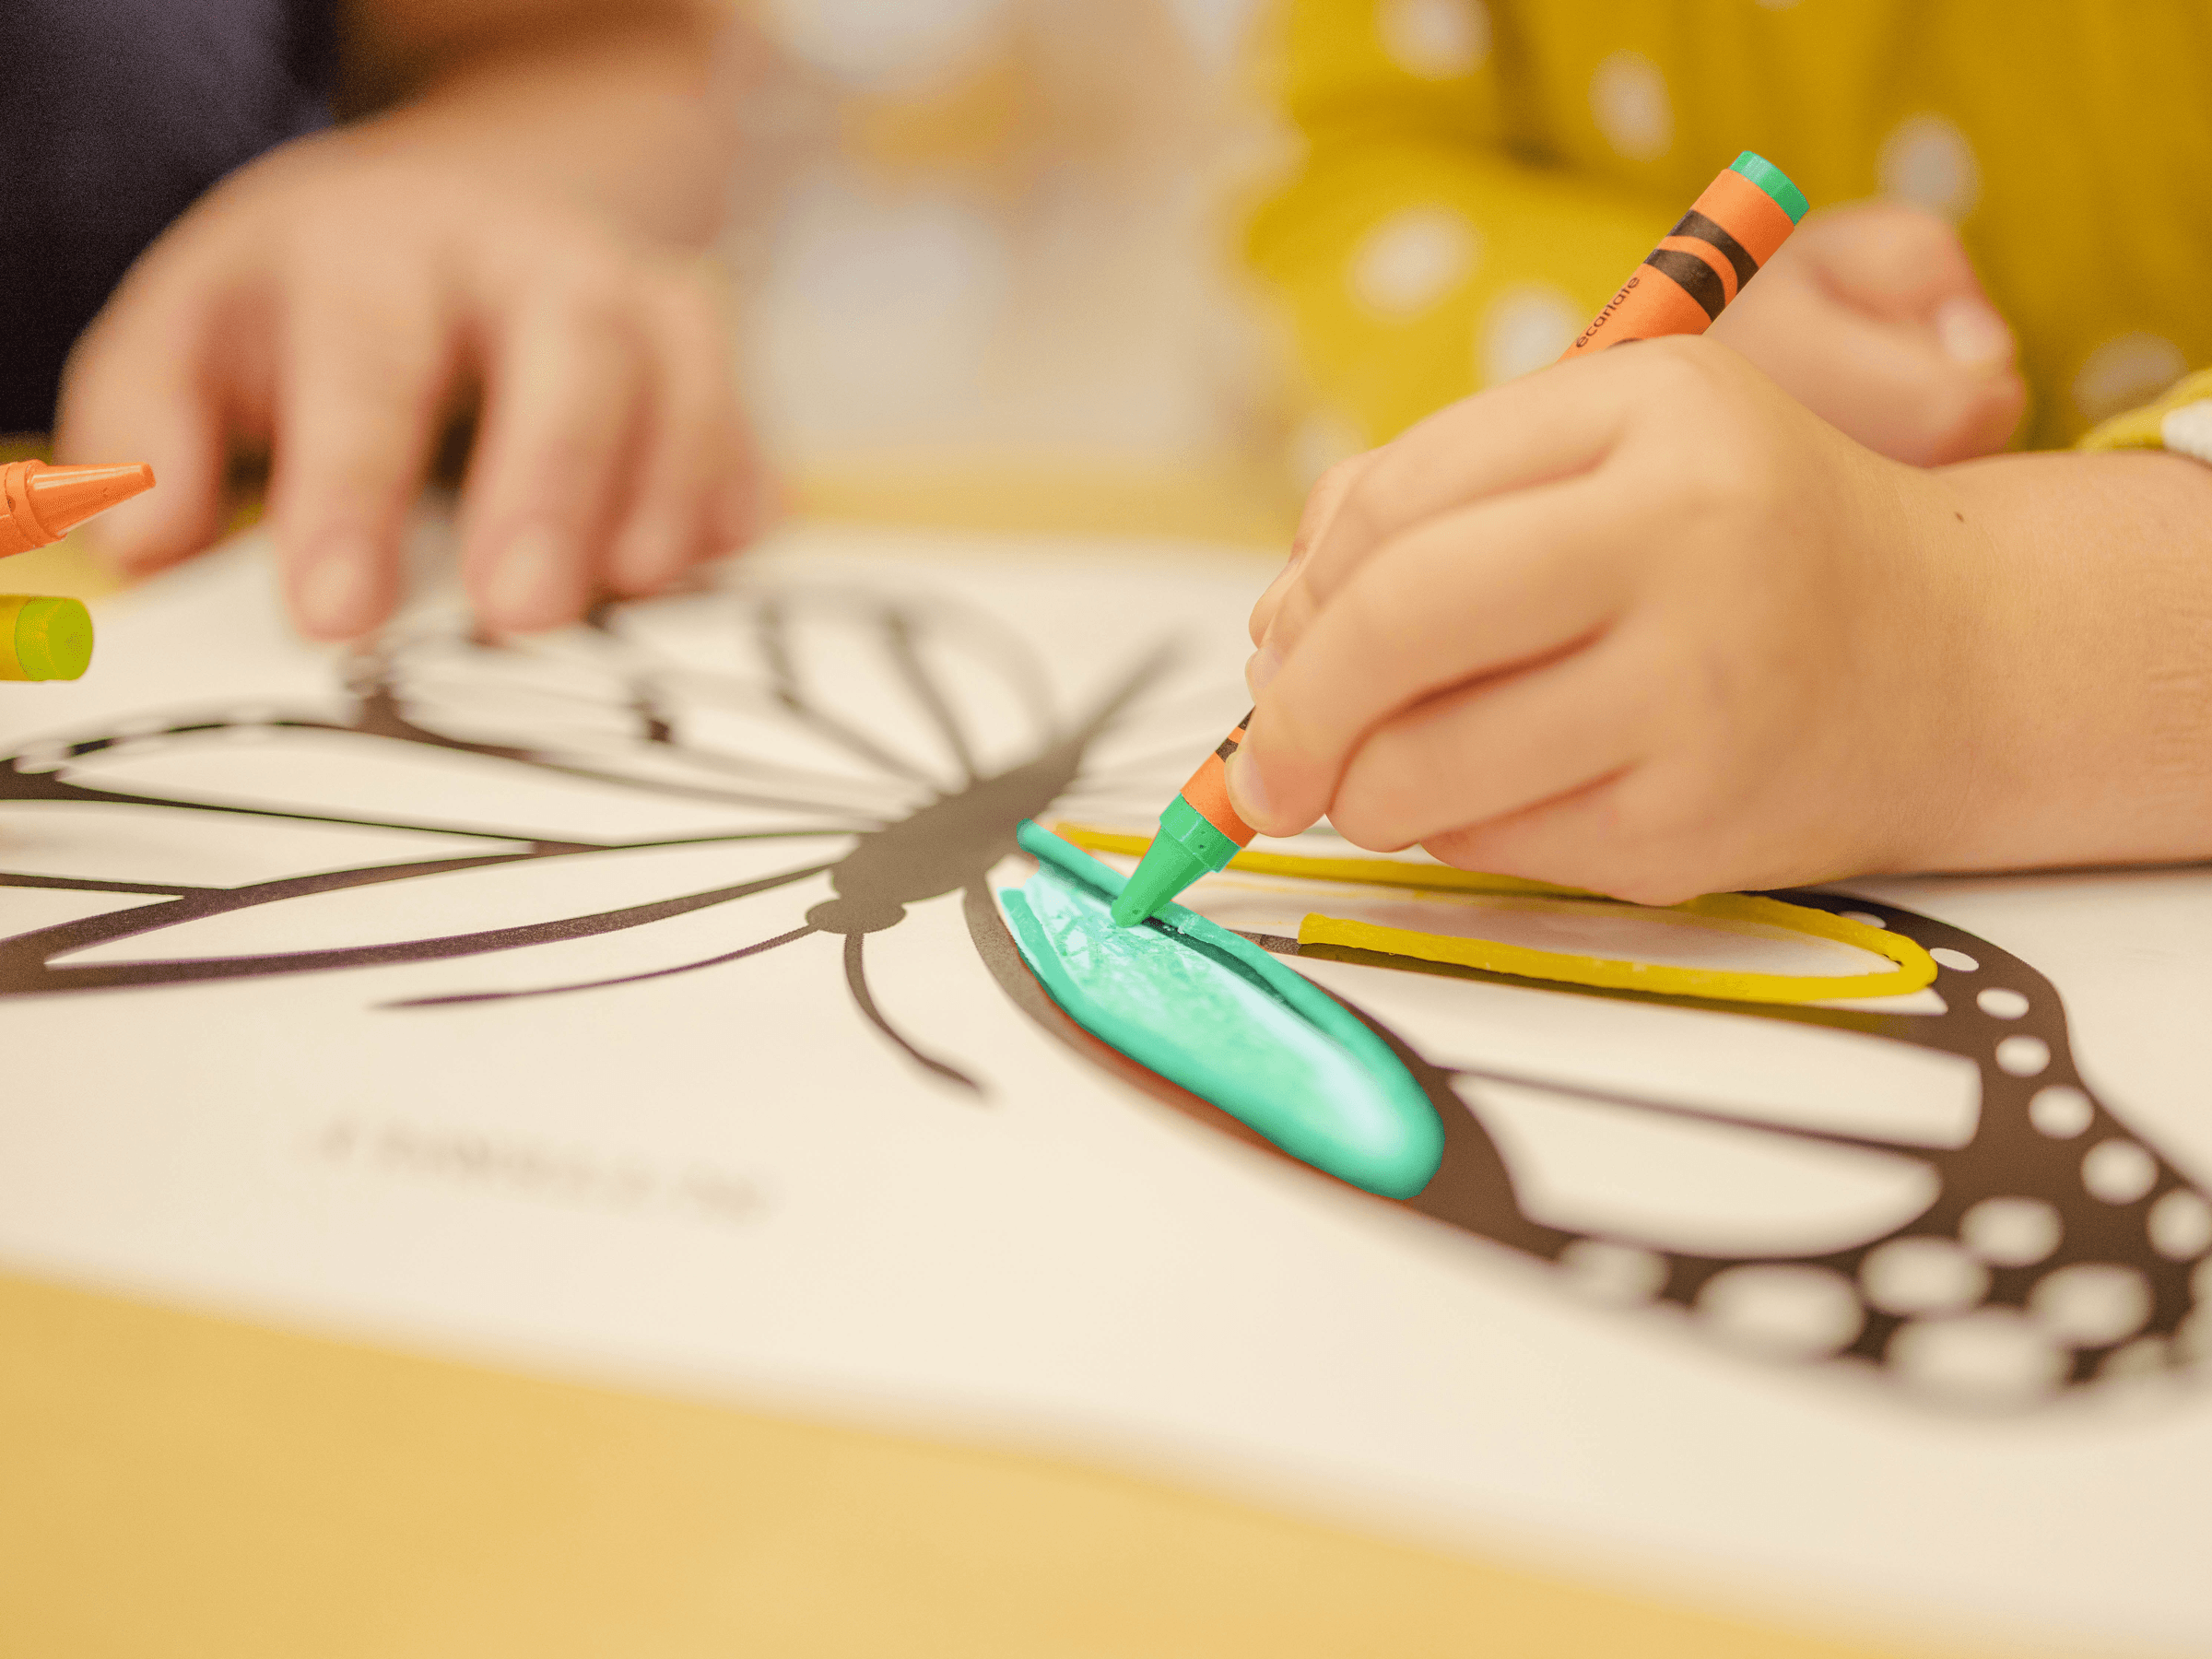 Kind malt Schmetterling mit grünem Wachsmalstift auf Papier.